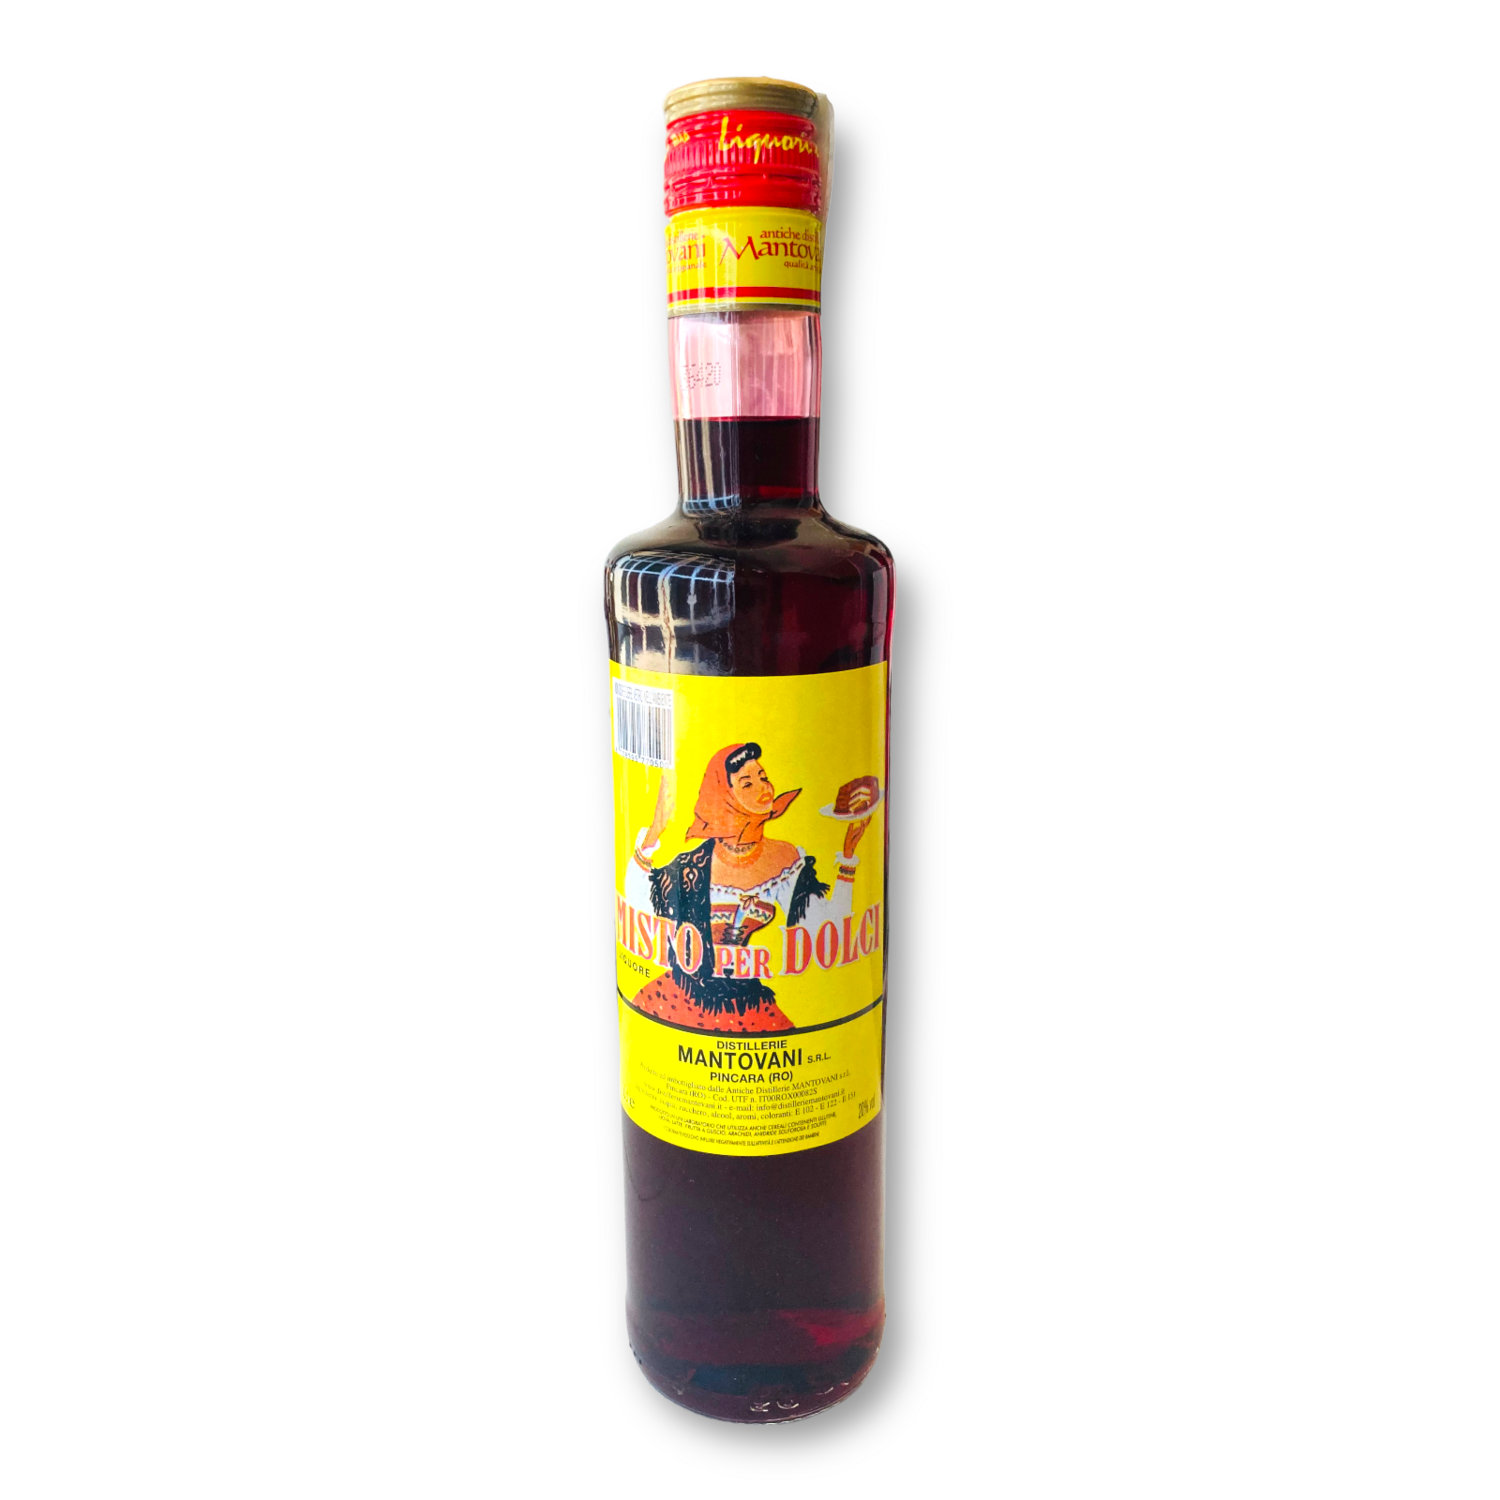 Liquore Misto per Dolci Antiche Distillerie Mantovani 50cl. Vol. 20%